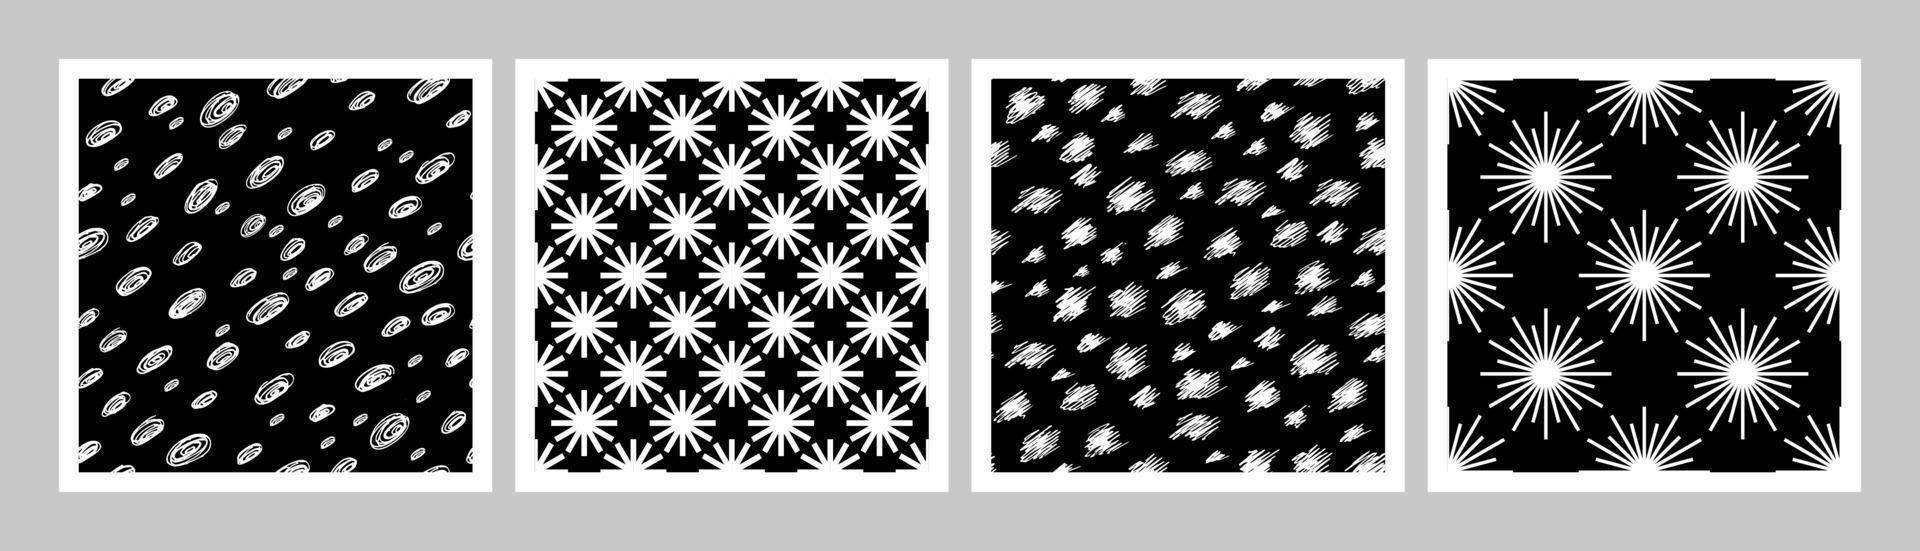 colección de imitación de fondo transparente de la nieve. conjunto de papel tapiz vectorial en estilo plano. nieve, copos de nieve. fondo de invierno blanco y negro vector